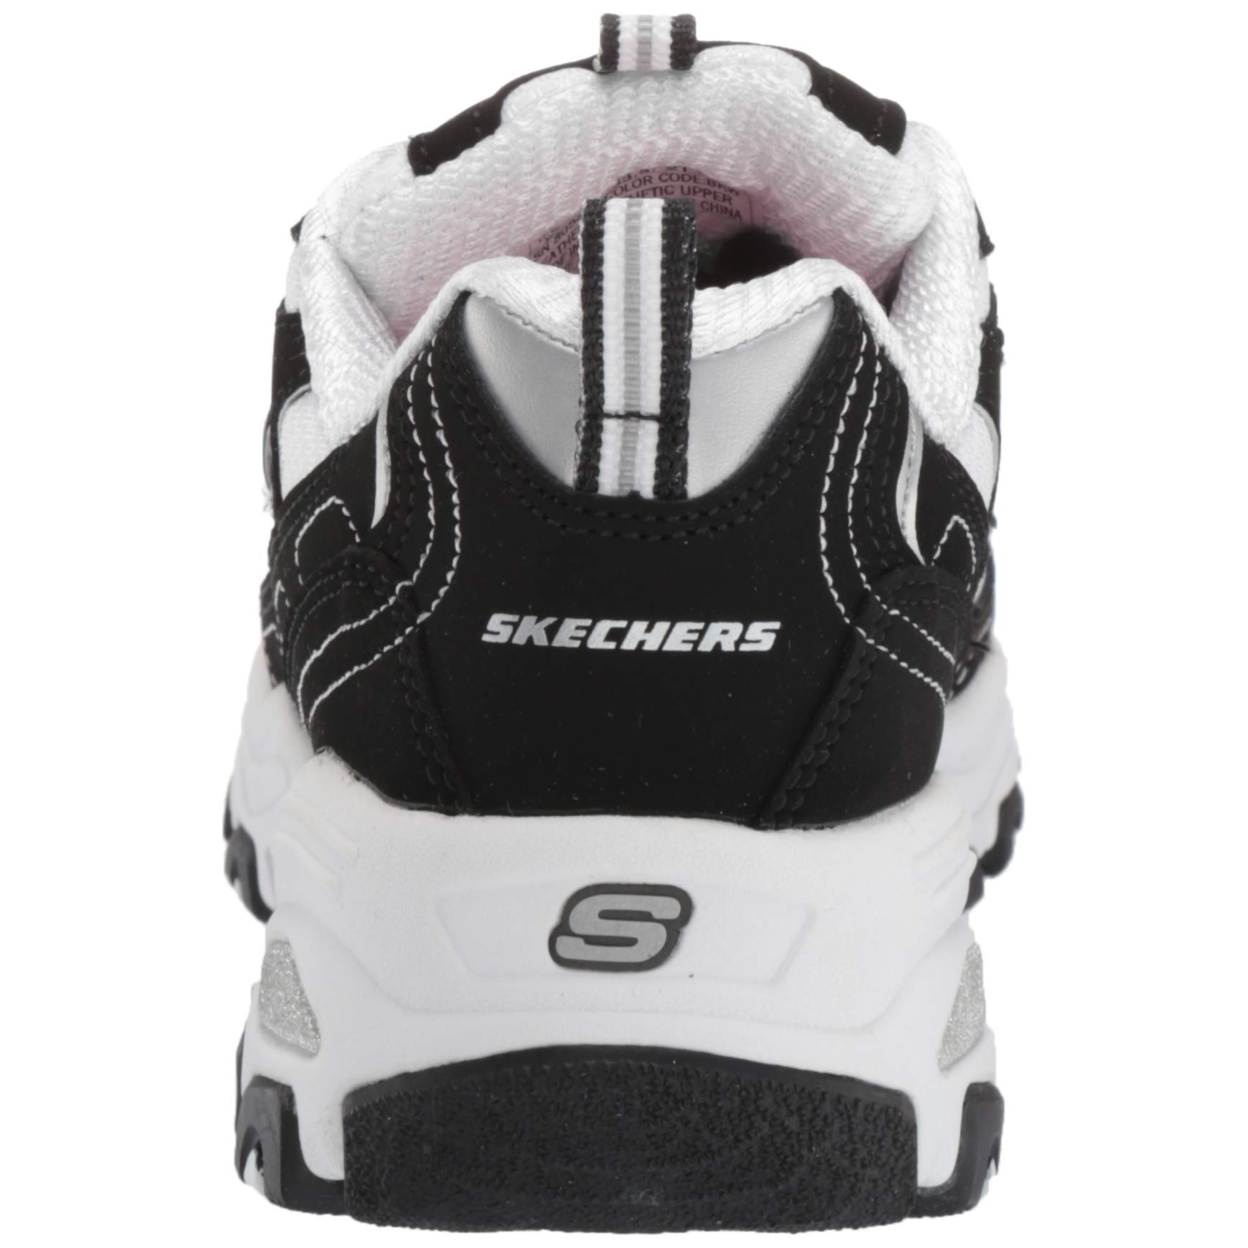 Skechers Kids' D'Lites-Biggest Fan Sneaker BKW - BKW, 12.5